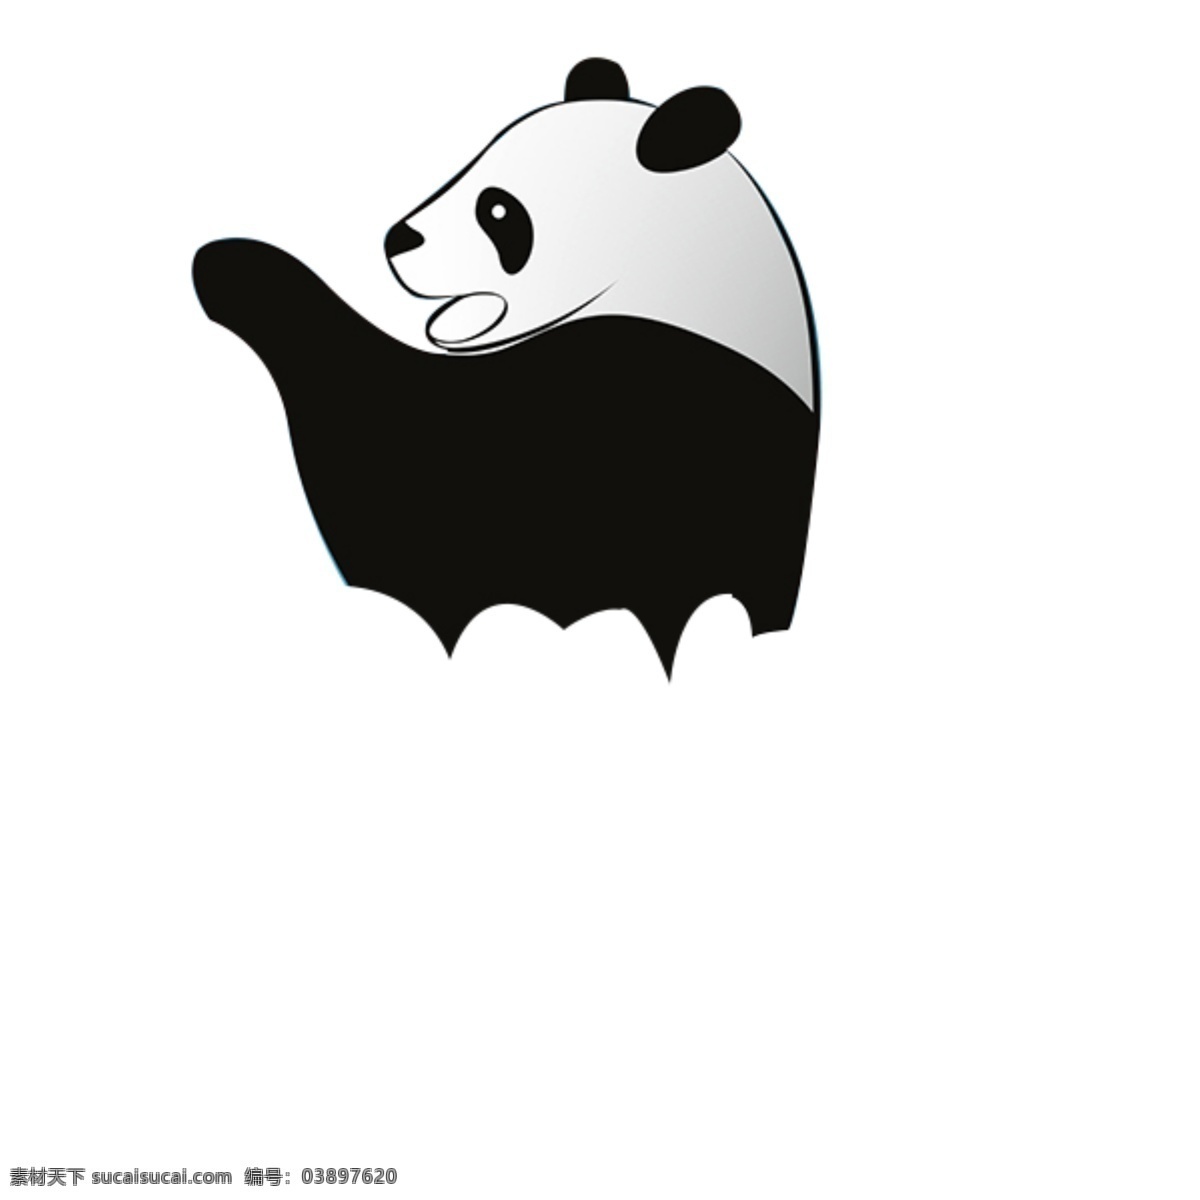 熊猫 可爱 panda 黑白 元素 动物 分层